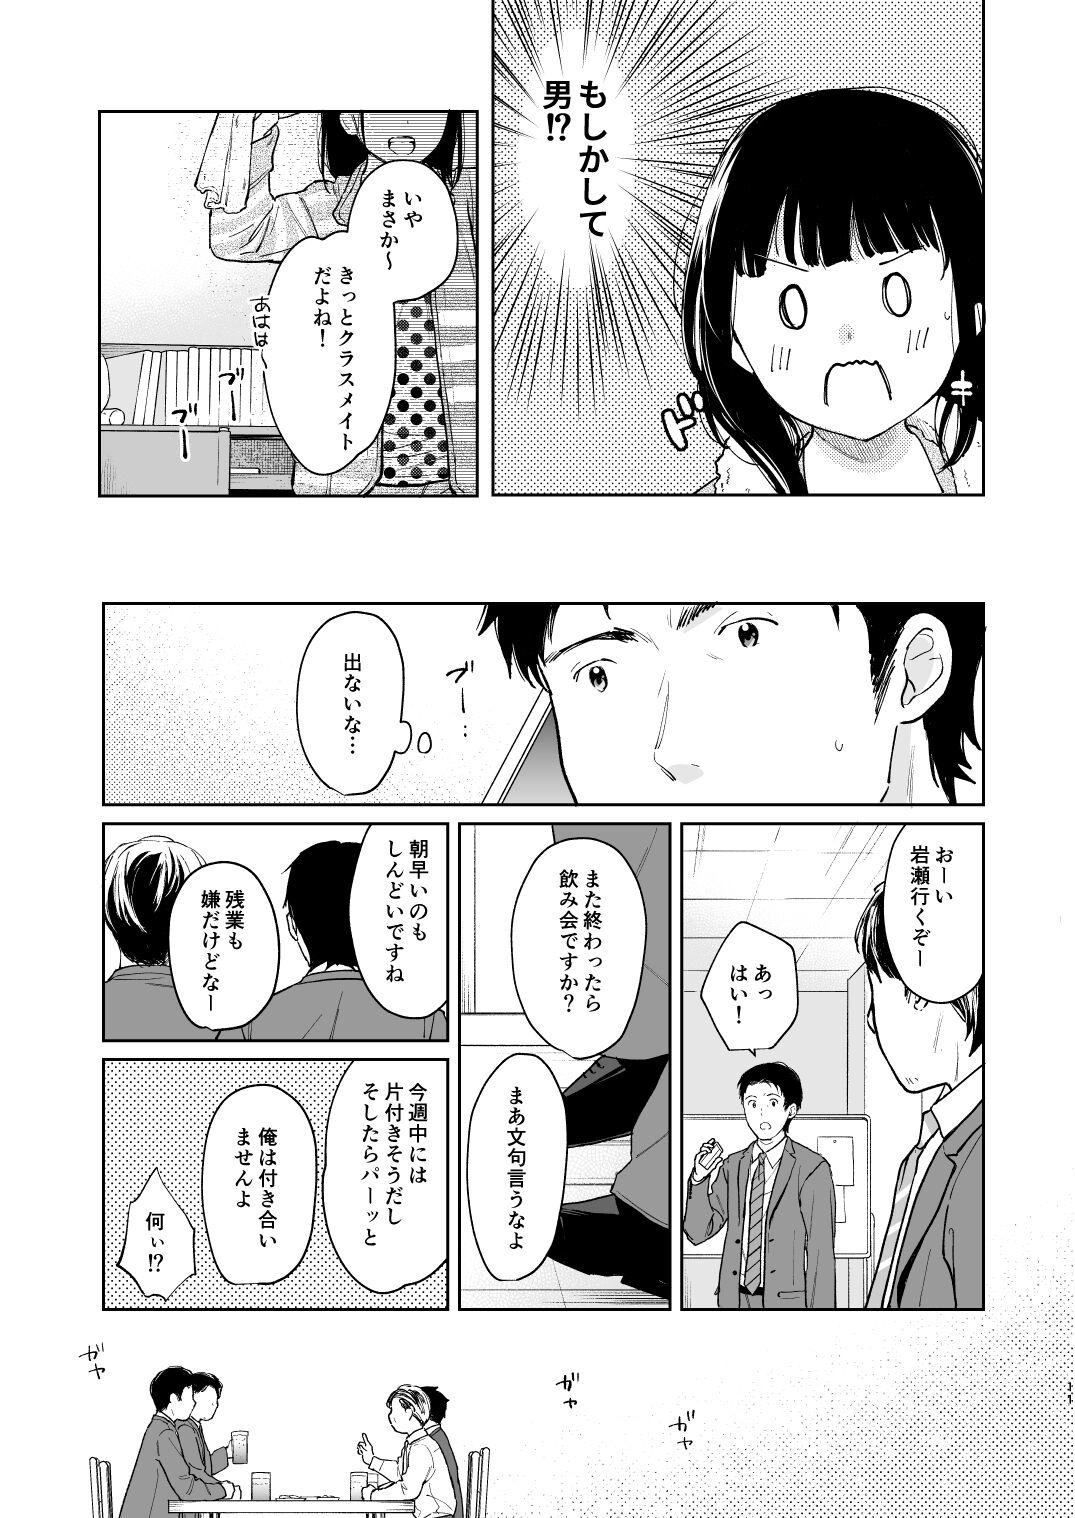 Asshole Kimi no Taion Kimi no Kodou 3 - Original Ftvgirls - Page 10